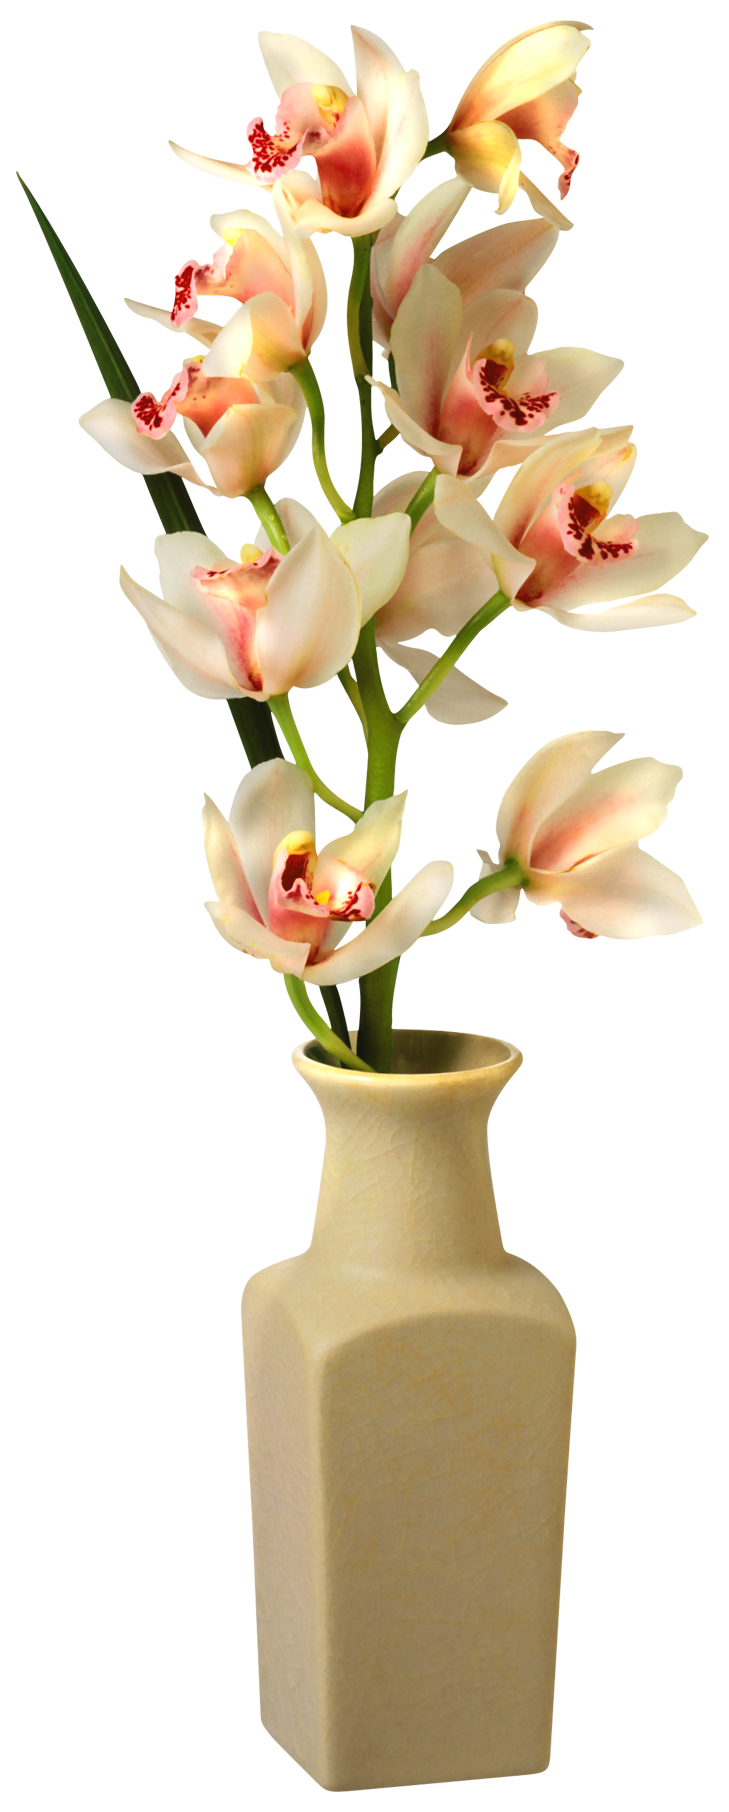 Flower vase png. Images free download